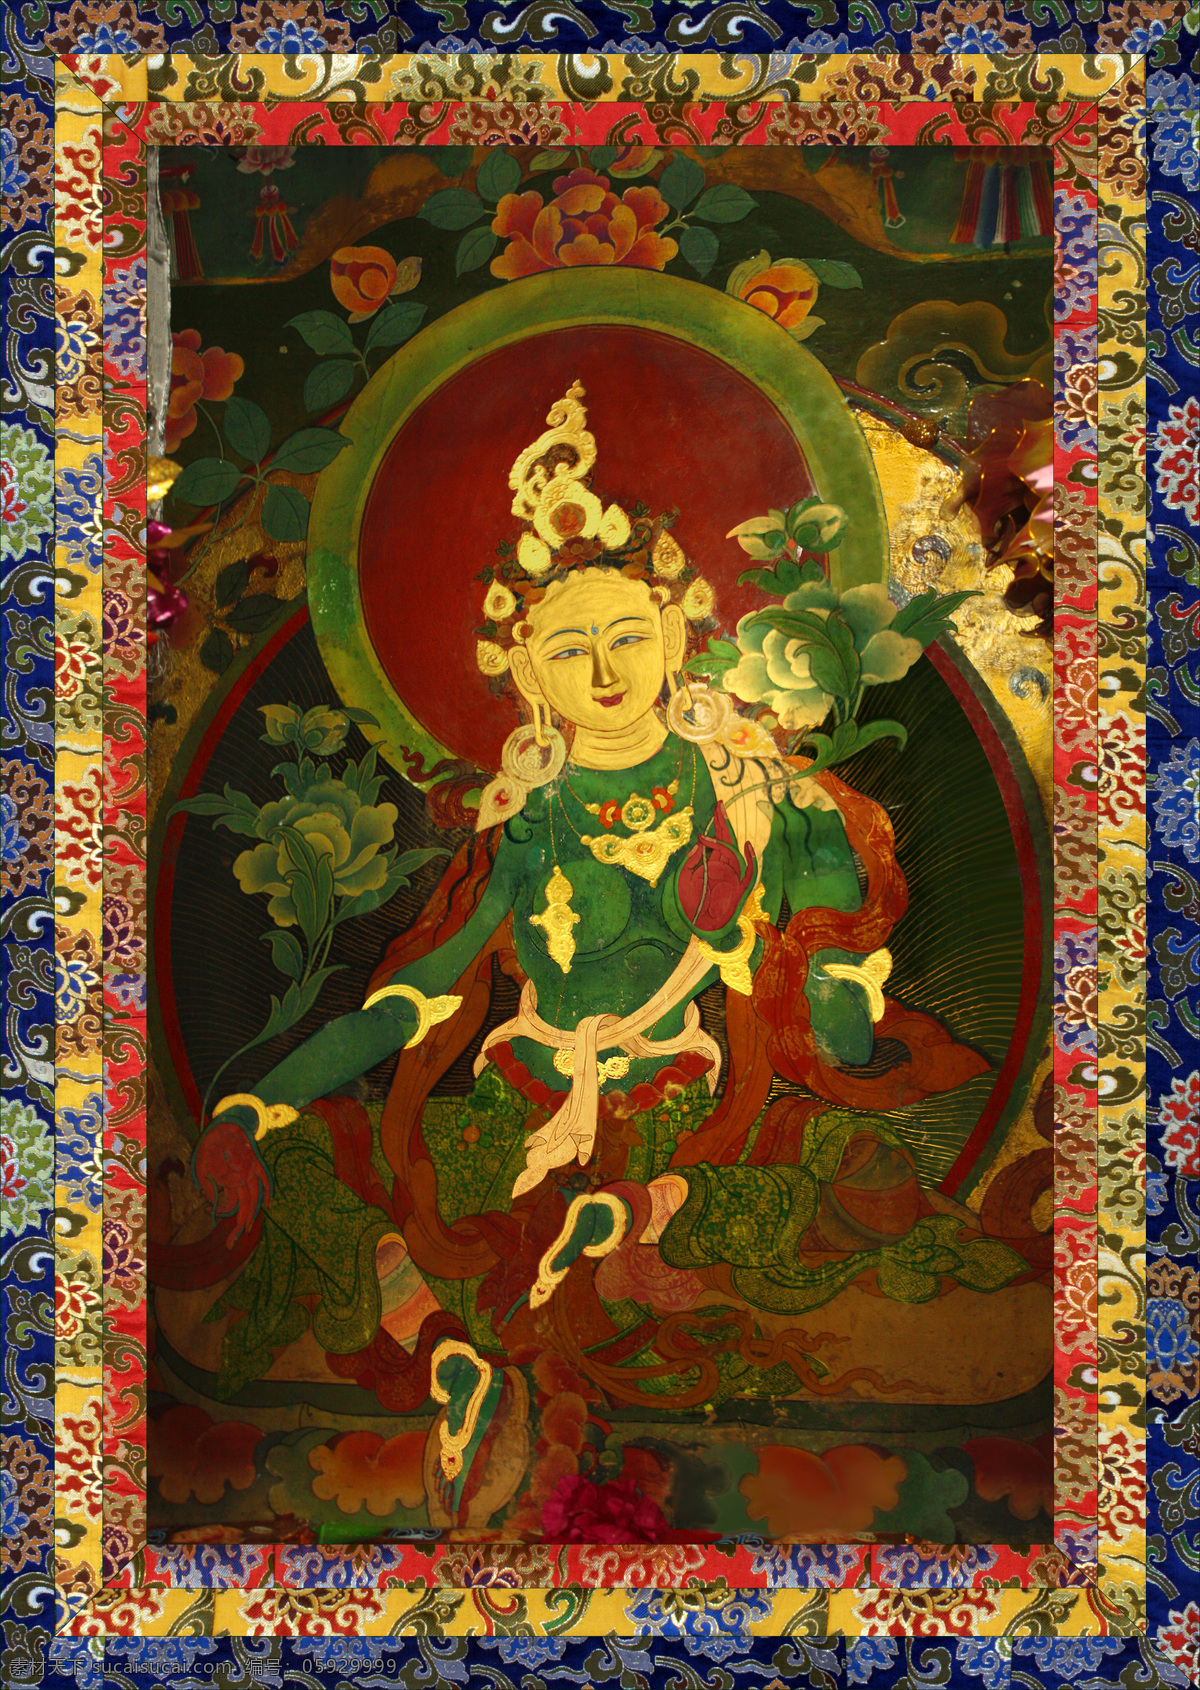 下 密 院里 显灵 度 母 石碑 佛 佛教 密宗 藏传佛教 西藏 唐卡 度母 绿度母 下密院 宗教信仰 文化艺术